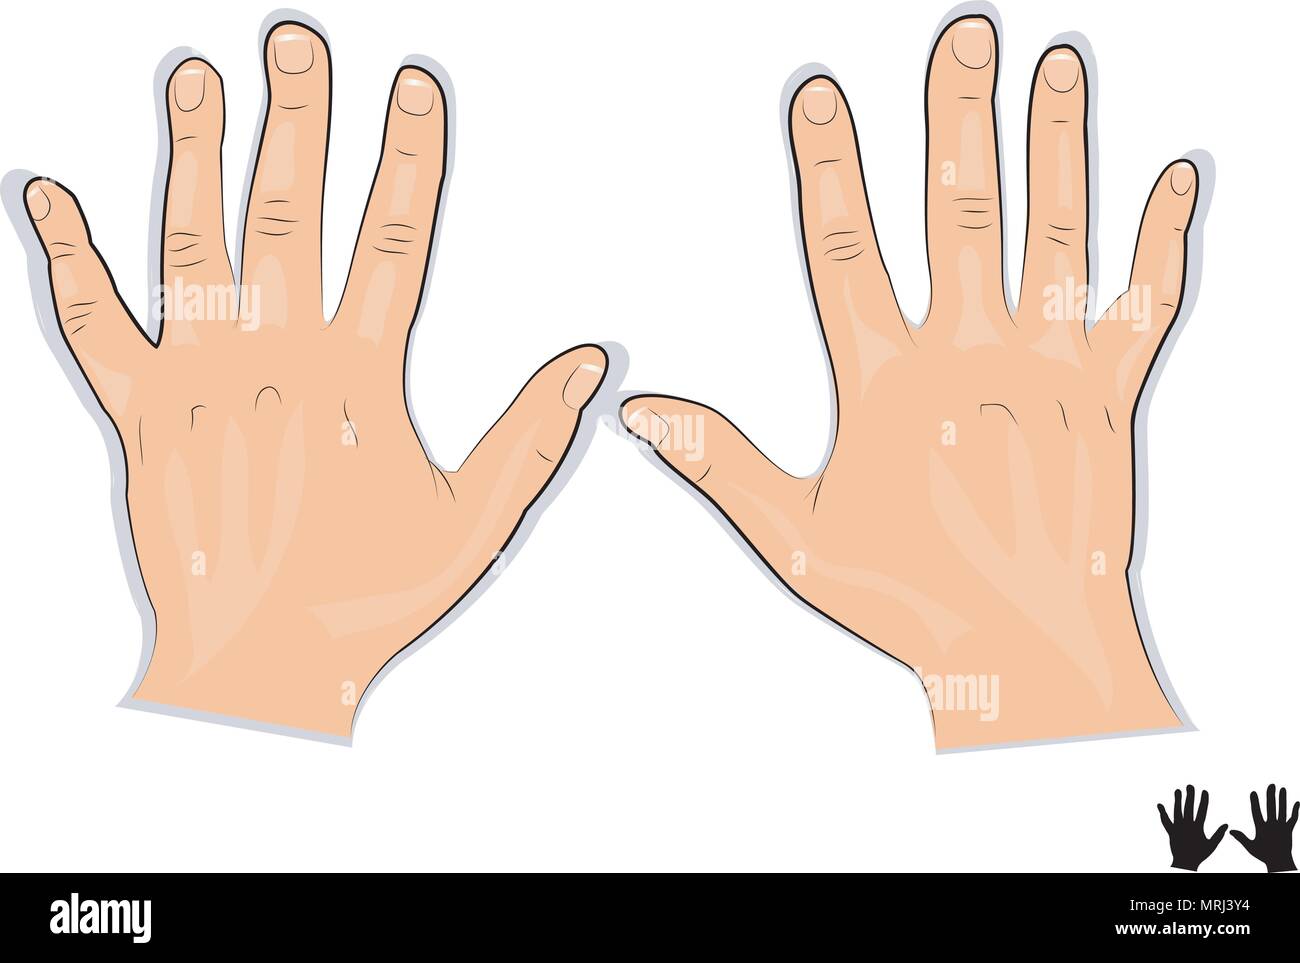 Illustrazione di un mans le mani per pubblicizzare i prodotti per le mani Illustrazione Vettoriale